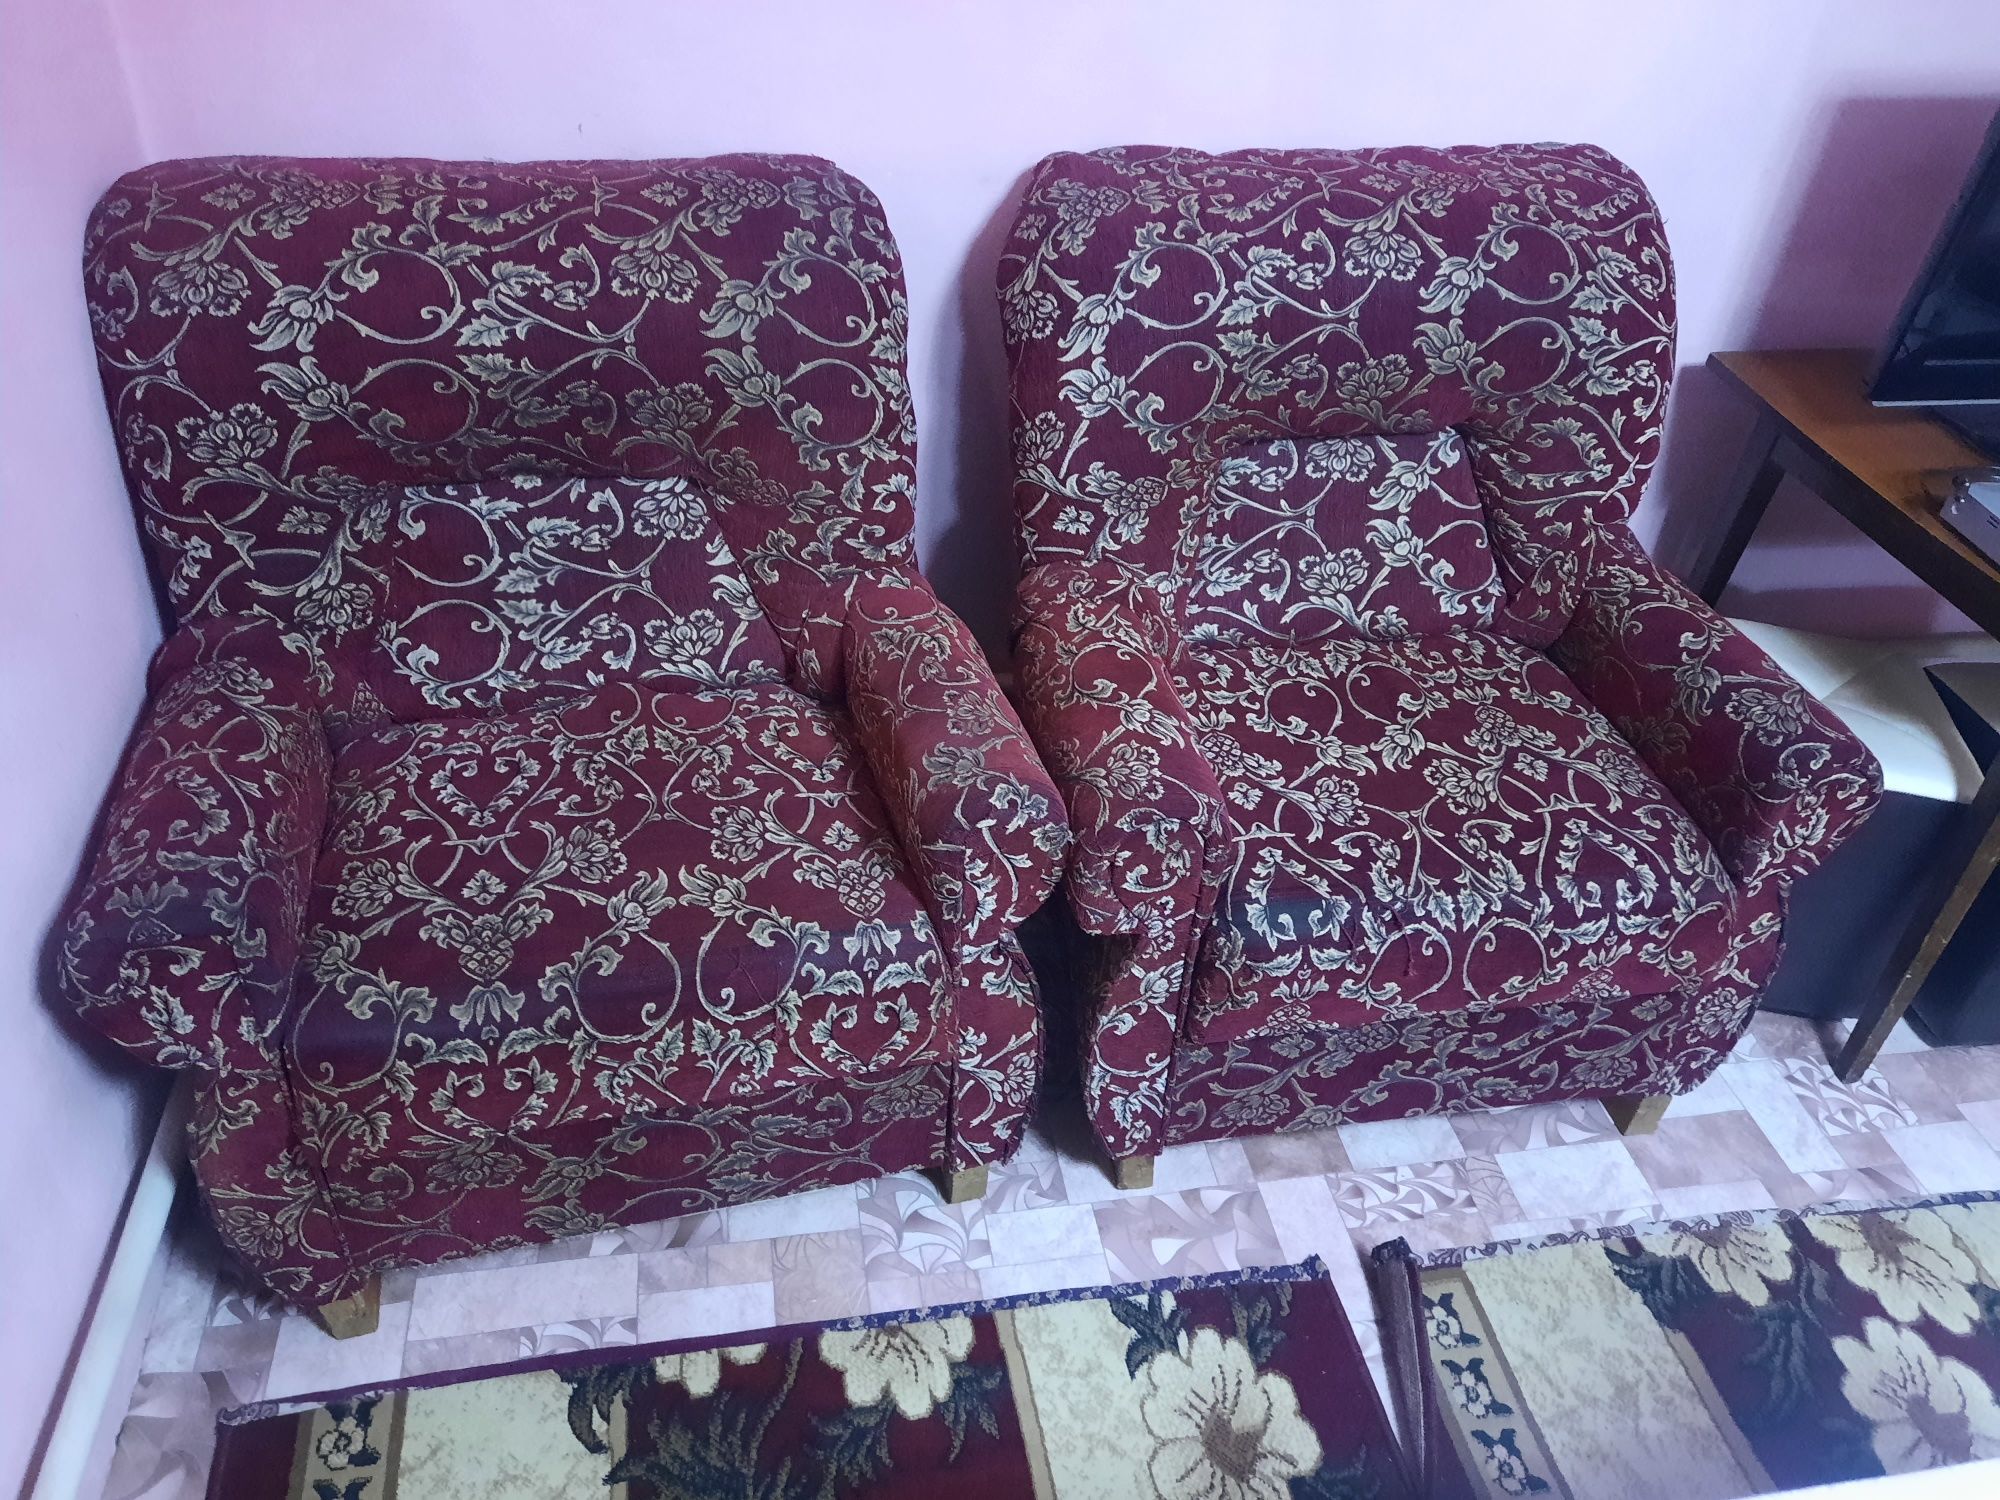 Продаю диван с креслами